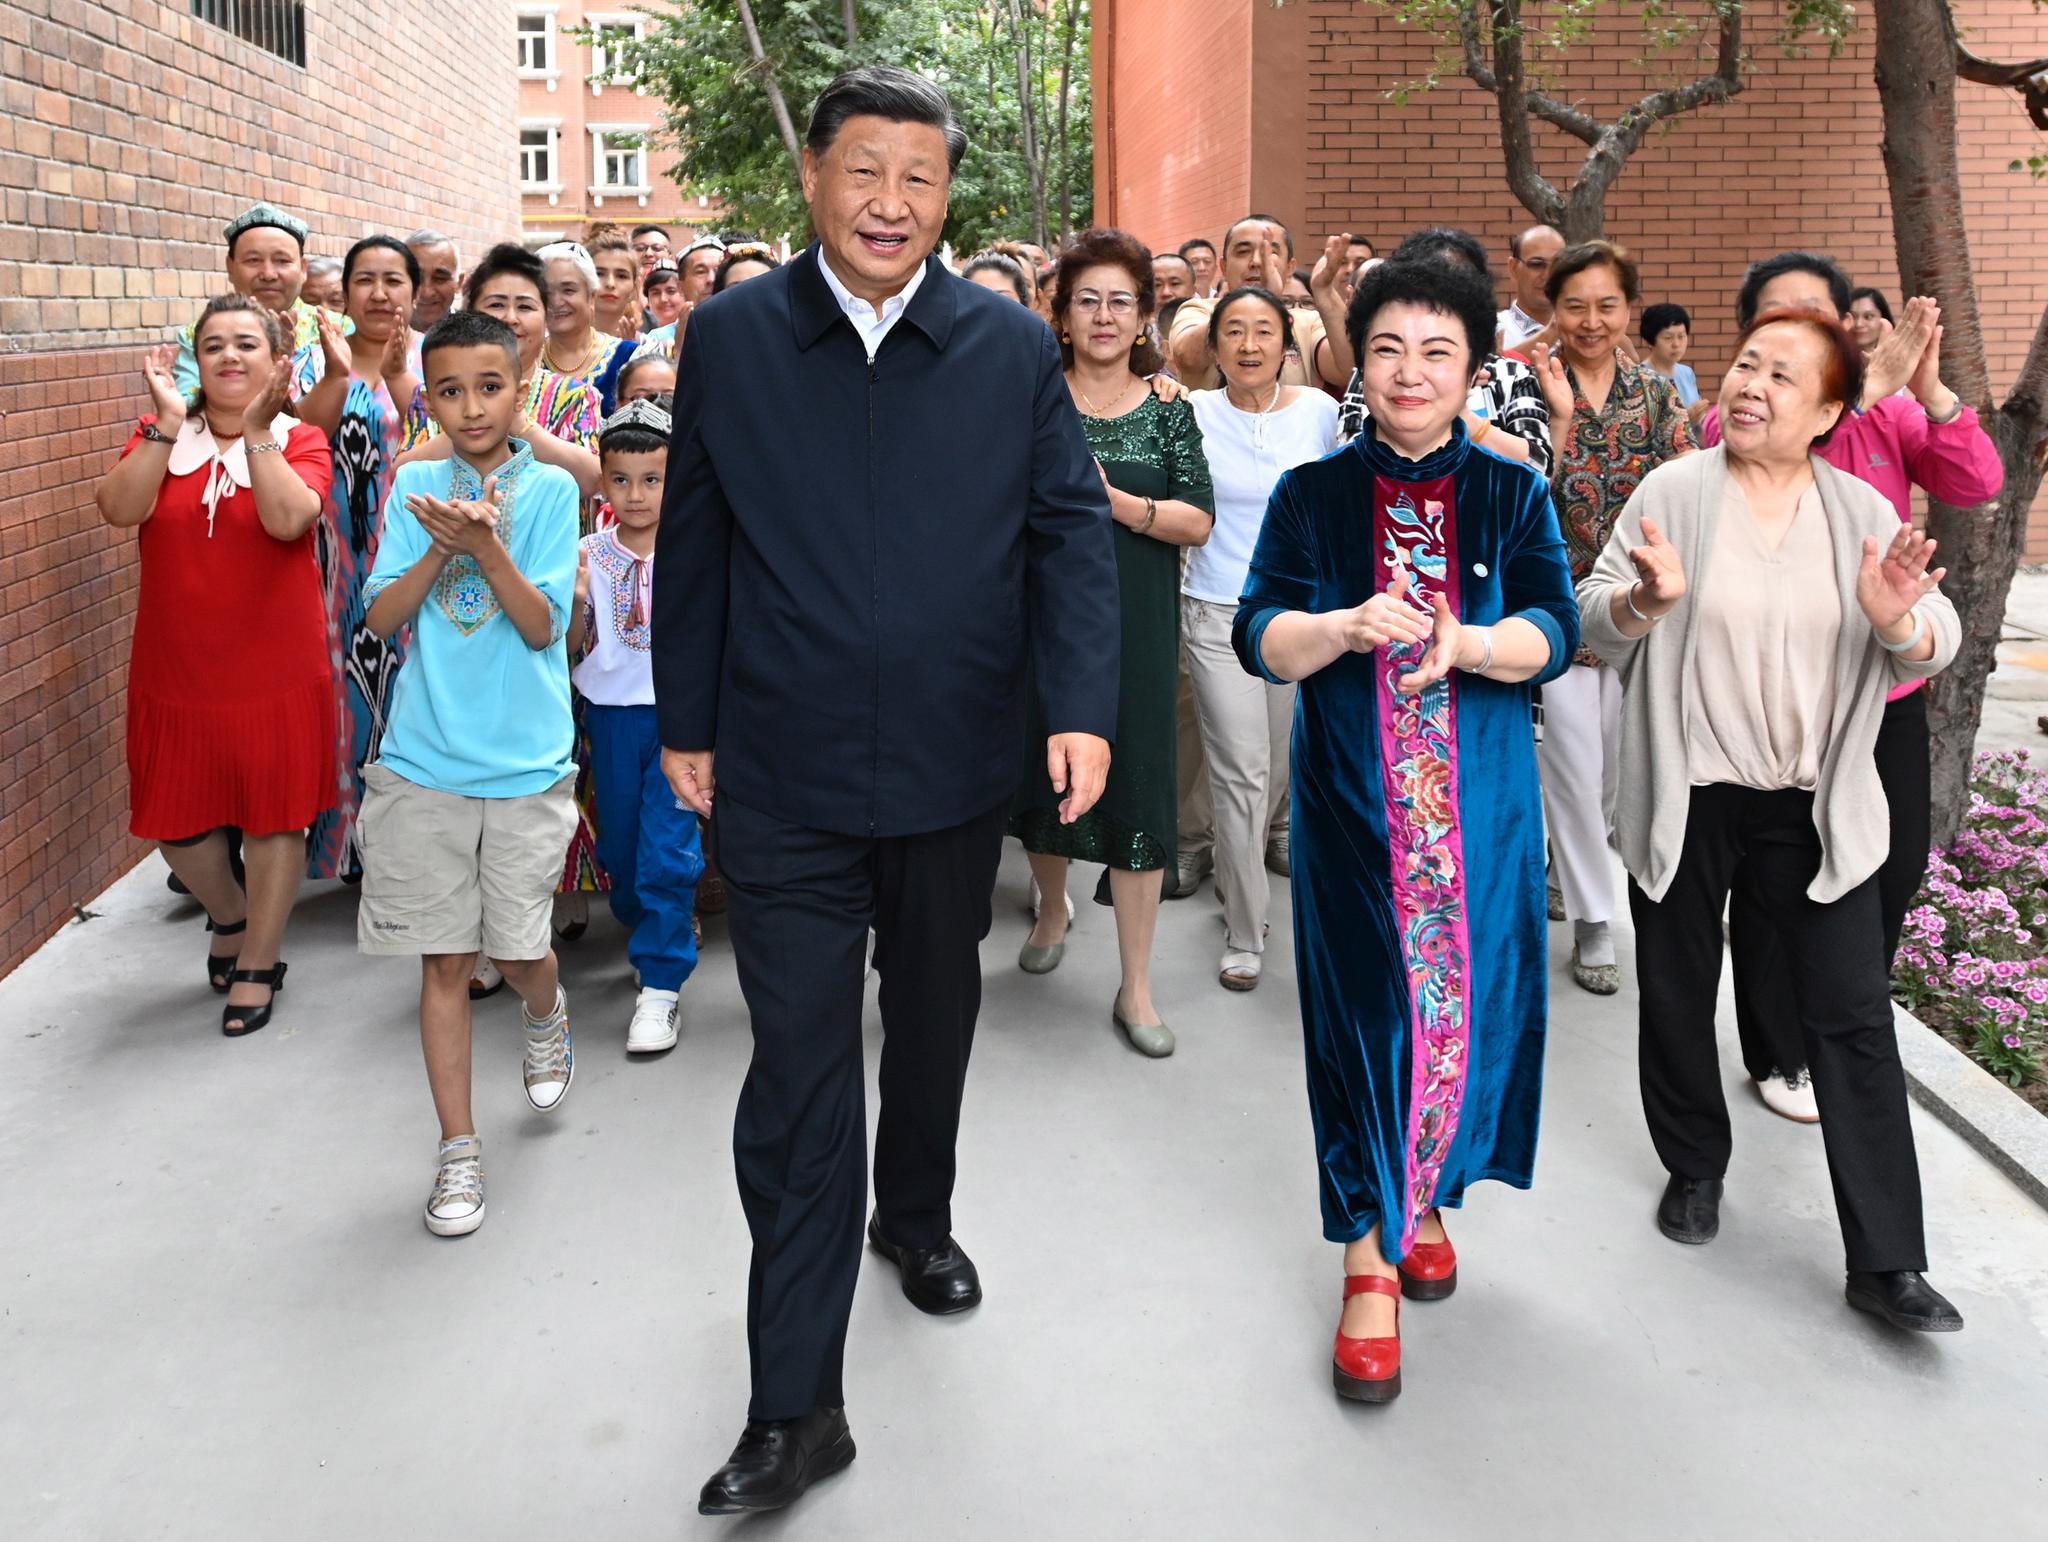 Kinas president, Xi Jinping, var nylig på besøk i den autonome uiguriske regionen Xinjiang nordvest i Kina, der tusenvis av uigurer har havnet i strengt bevoktede arbeidsleirer. Uigurer og andre kinesiske statsborgere som kjemper for rettighetene til den muslimske minoriteten, risikerer å bli pågrepet og utlevert til Kina hvis de driver aktivisme i eksil. De risikerer også at familien hjemme får problemer. 